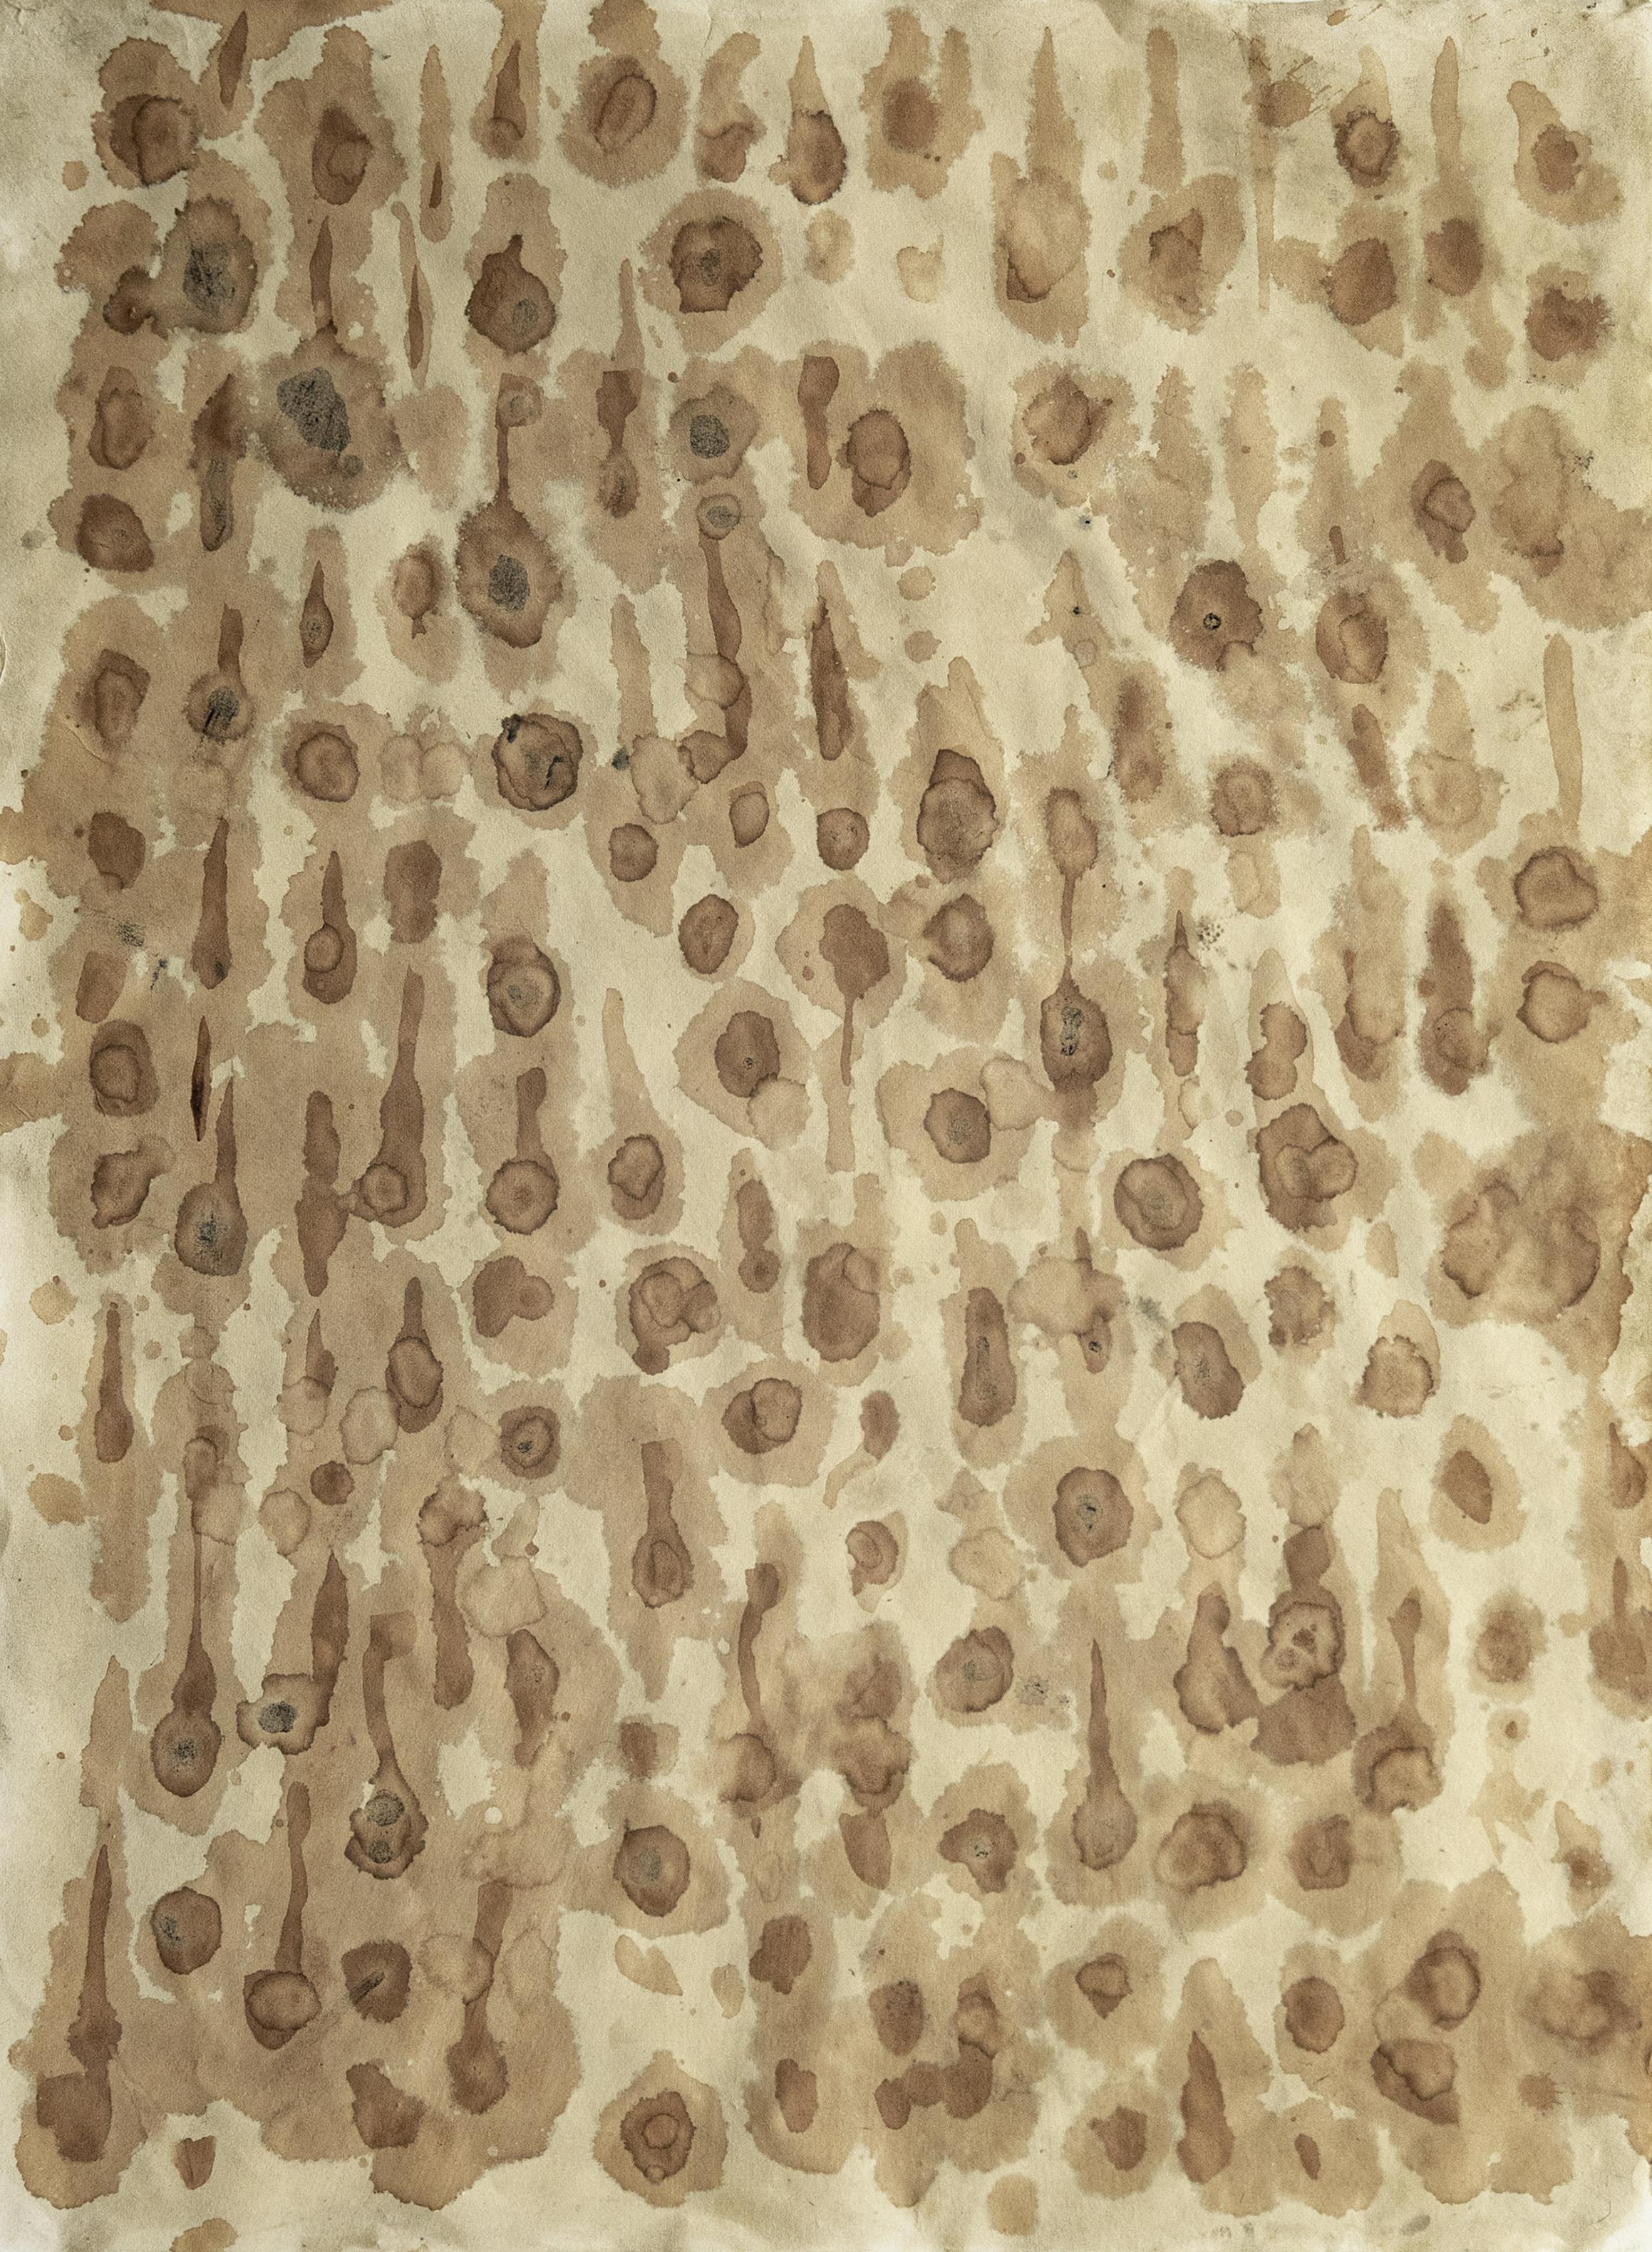 Abzählbar unendlich. Abstraktes Gemälde in Mischtechnik auf Awagami-Papier 